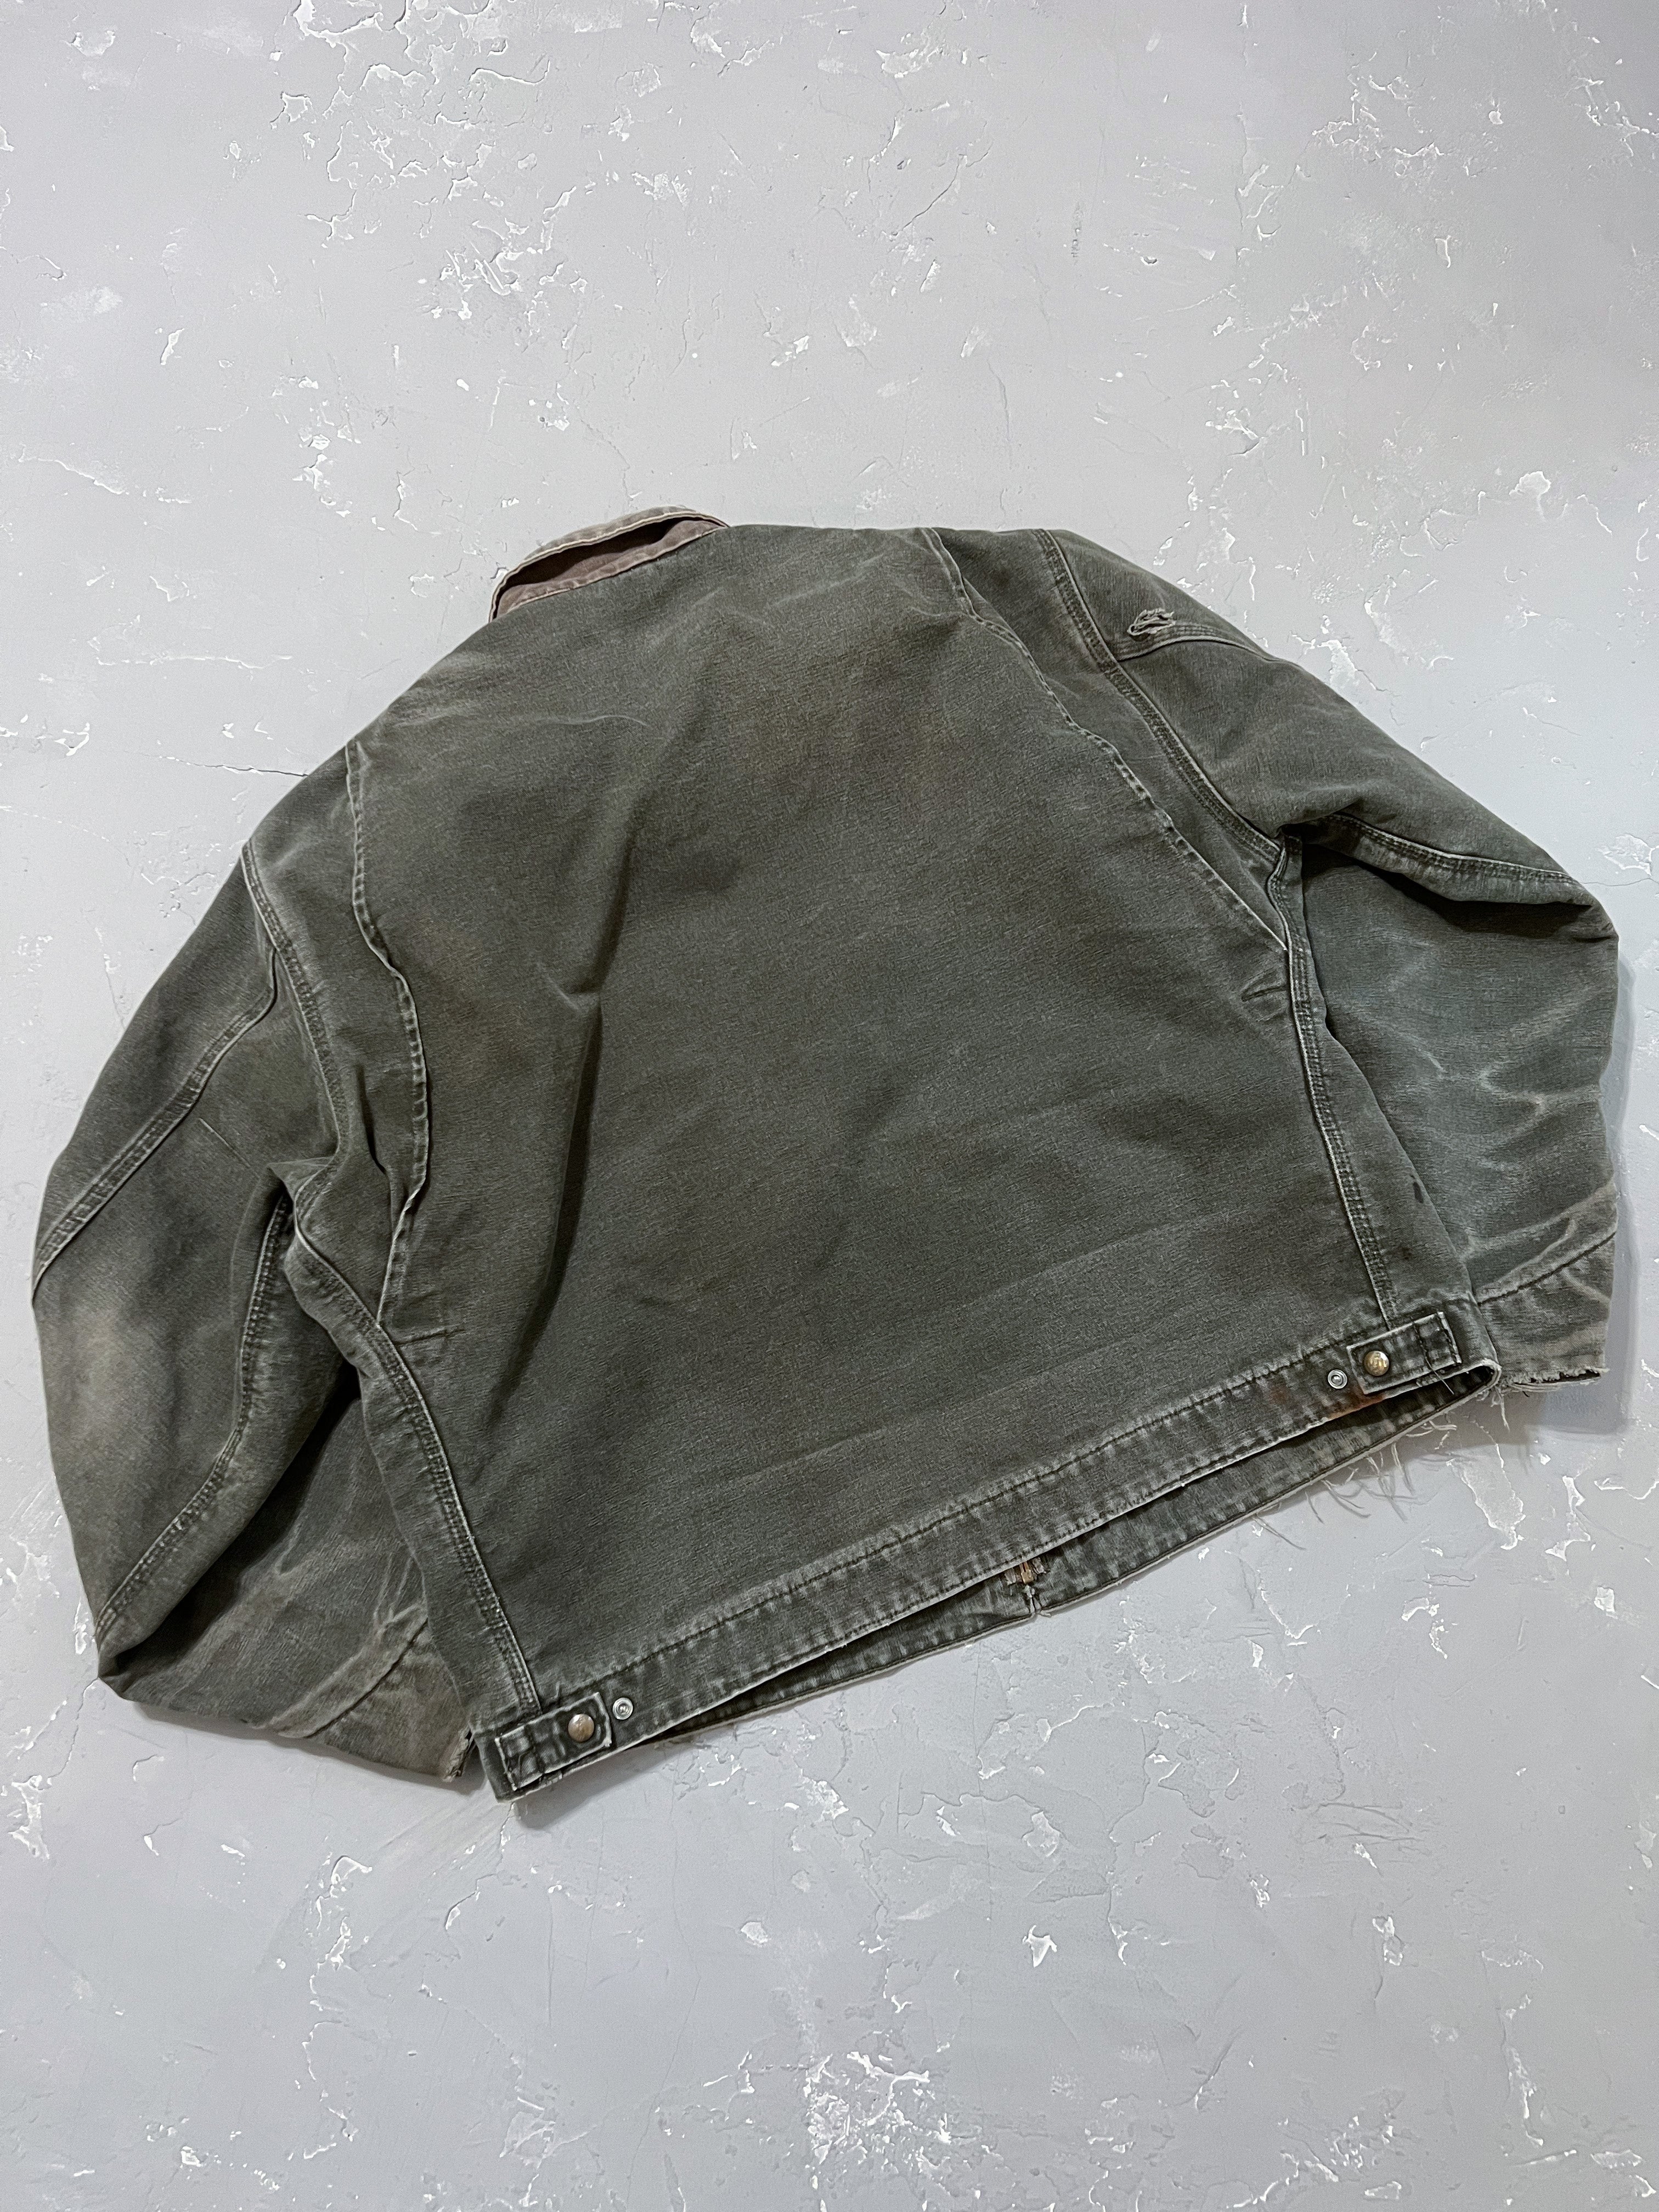 1990s Carhartt Moss Green Detroit Jacket [XL/2XL]